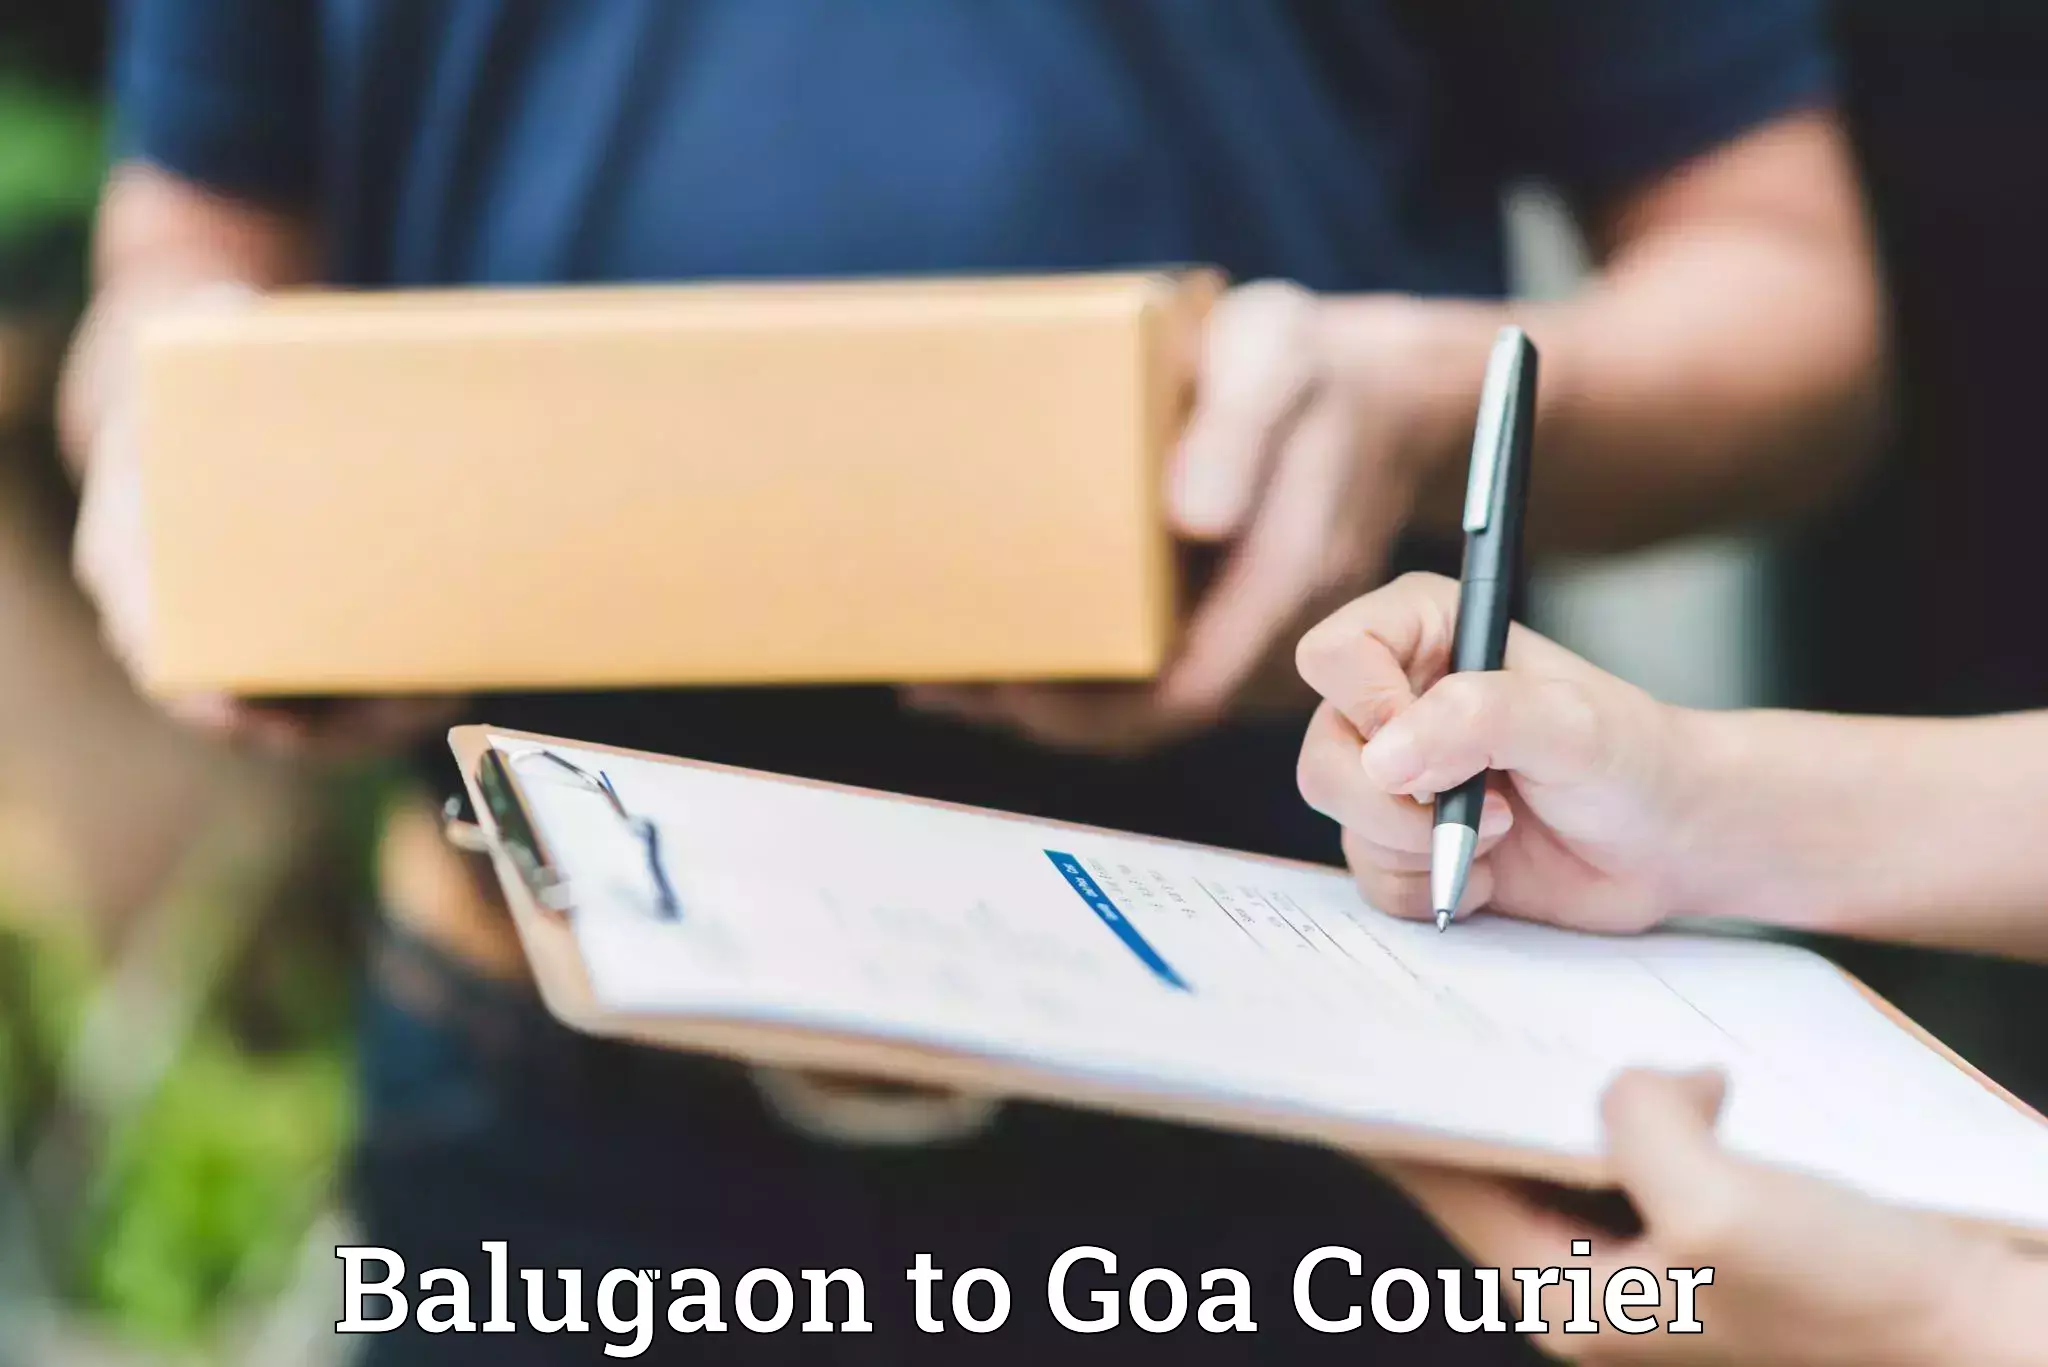 Furniture logistics Balugaon to South Goa